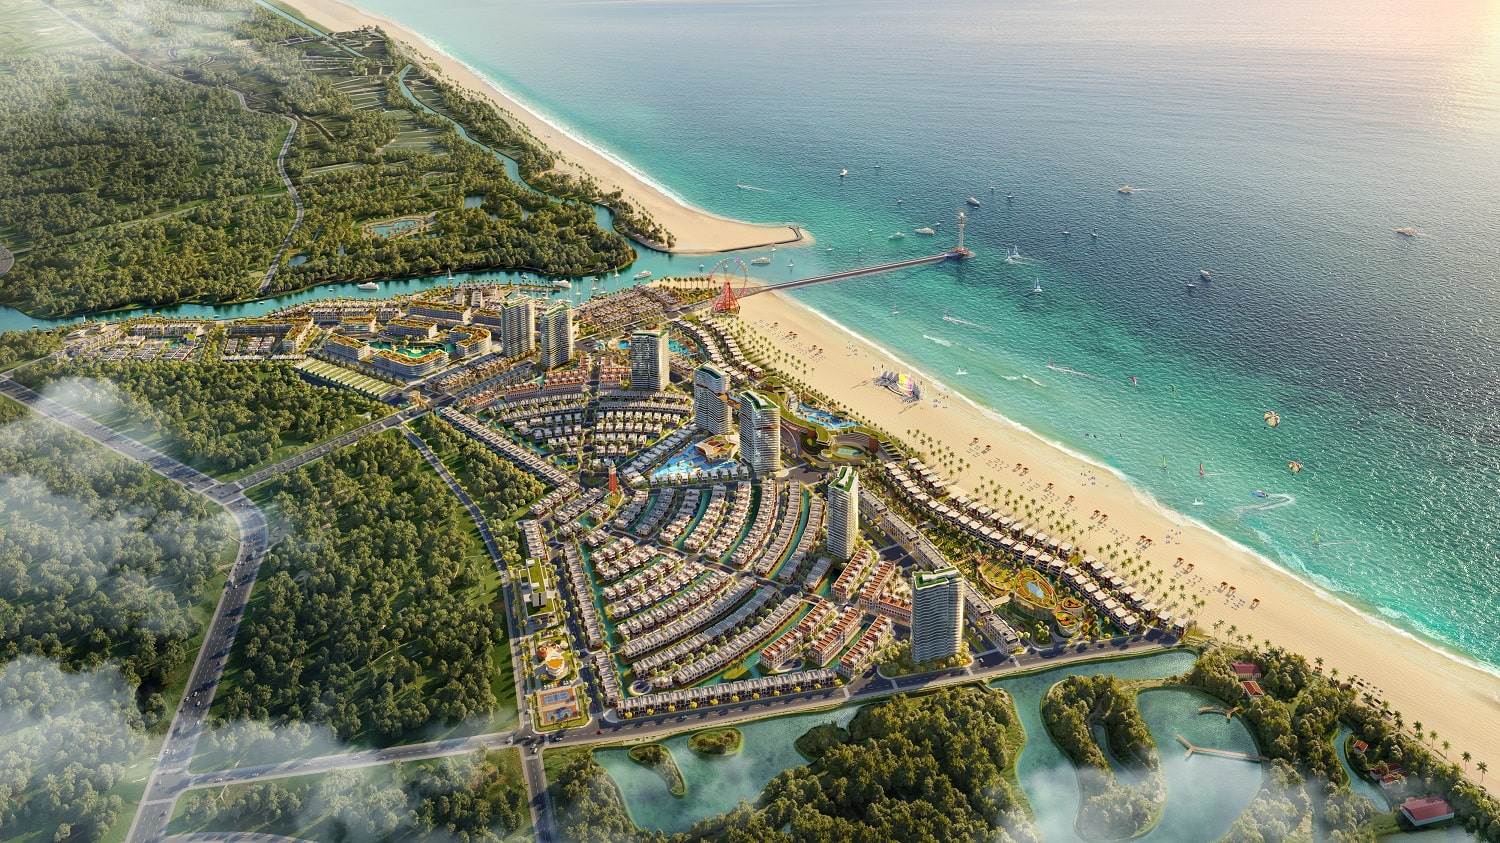 Tiện ích nổi bật Venezia Beach mang lại cho nhà đầu tư